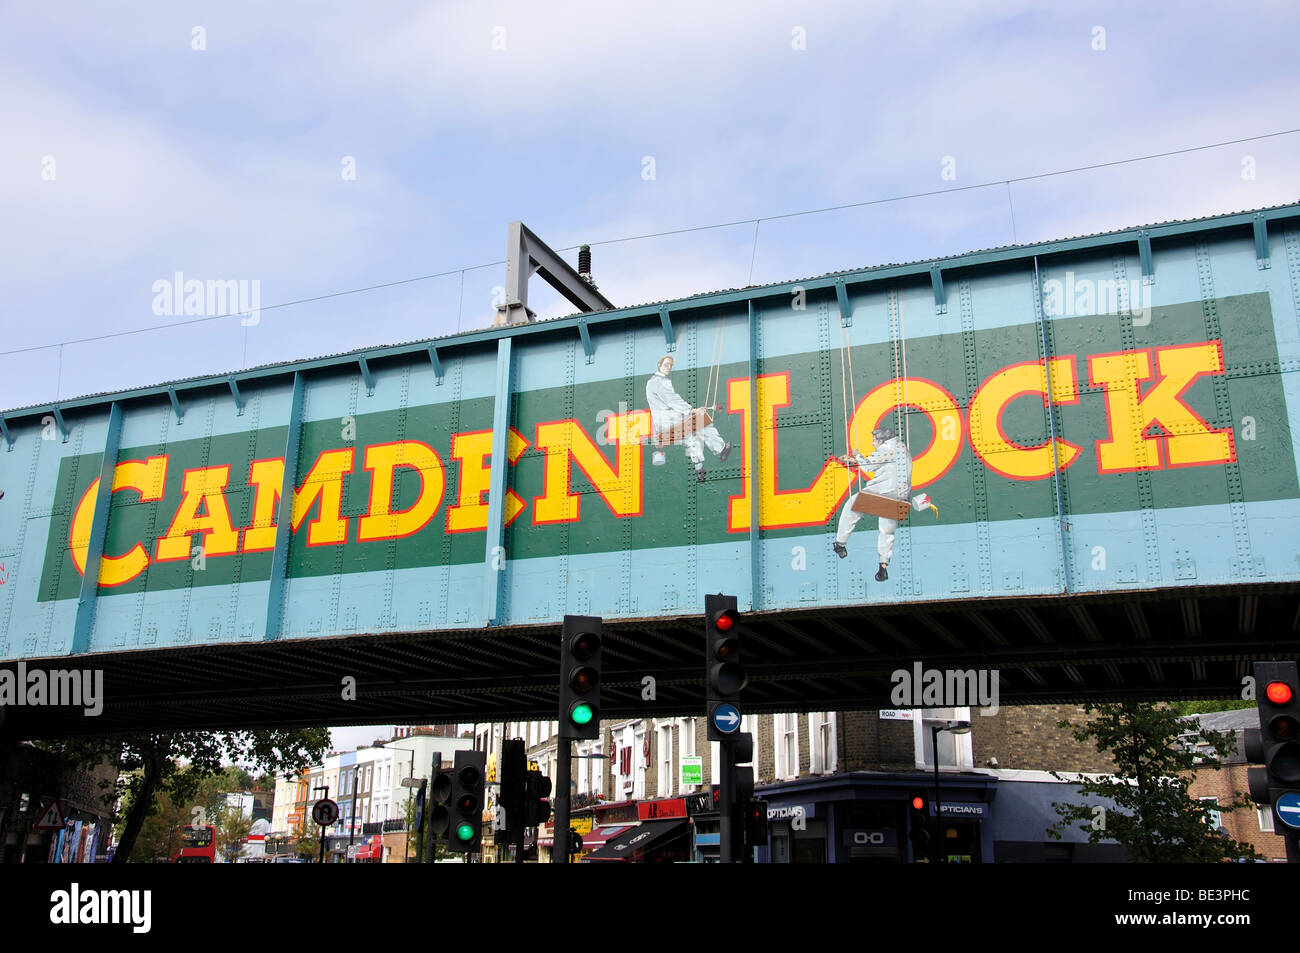 Camden Lock unterzeichnen, Camden High Street, Camden Town, London Borough of Camden, London, England, Vereinigtes Königreich Stockfoto